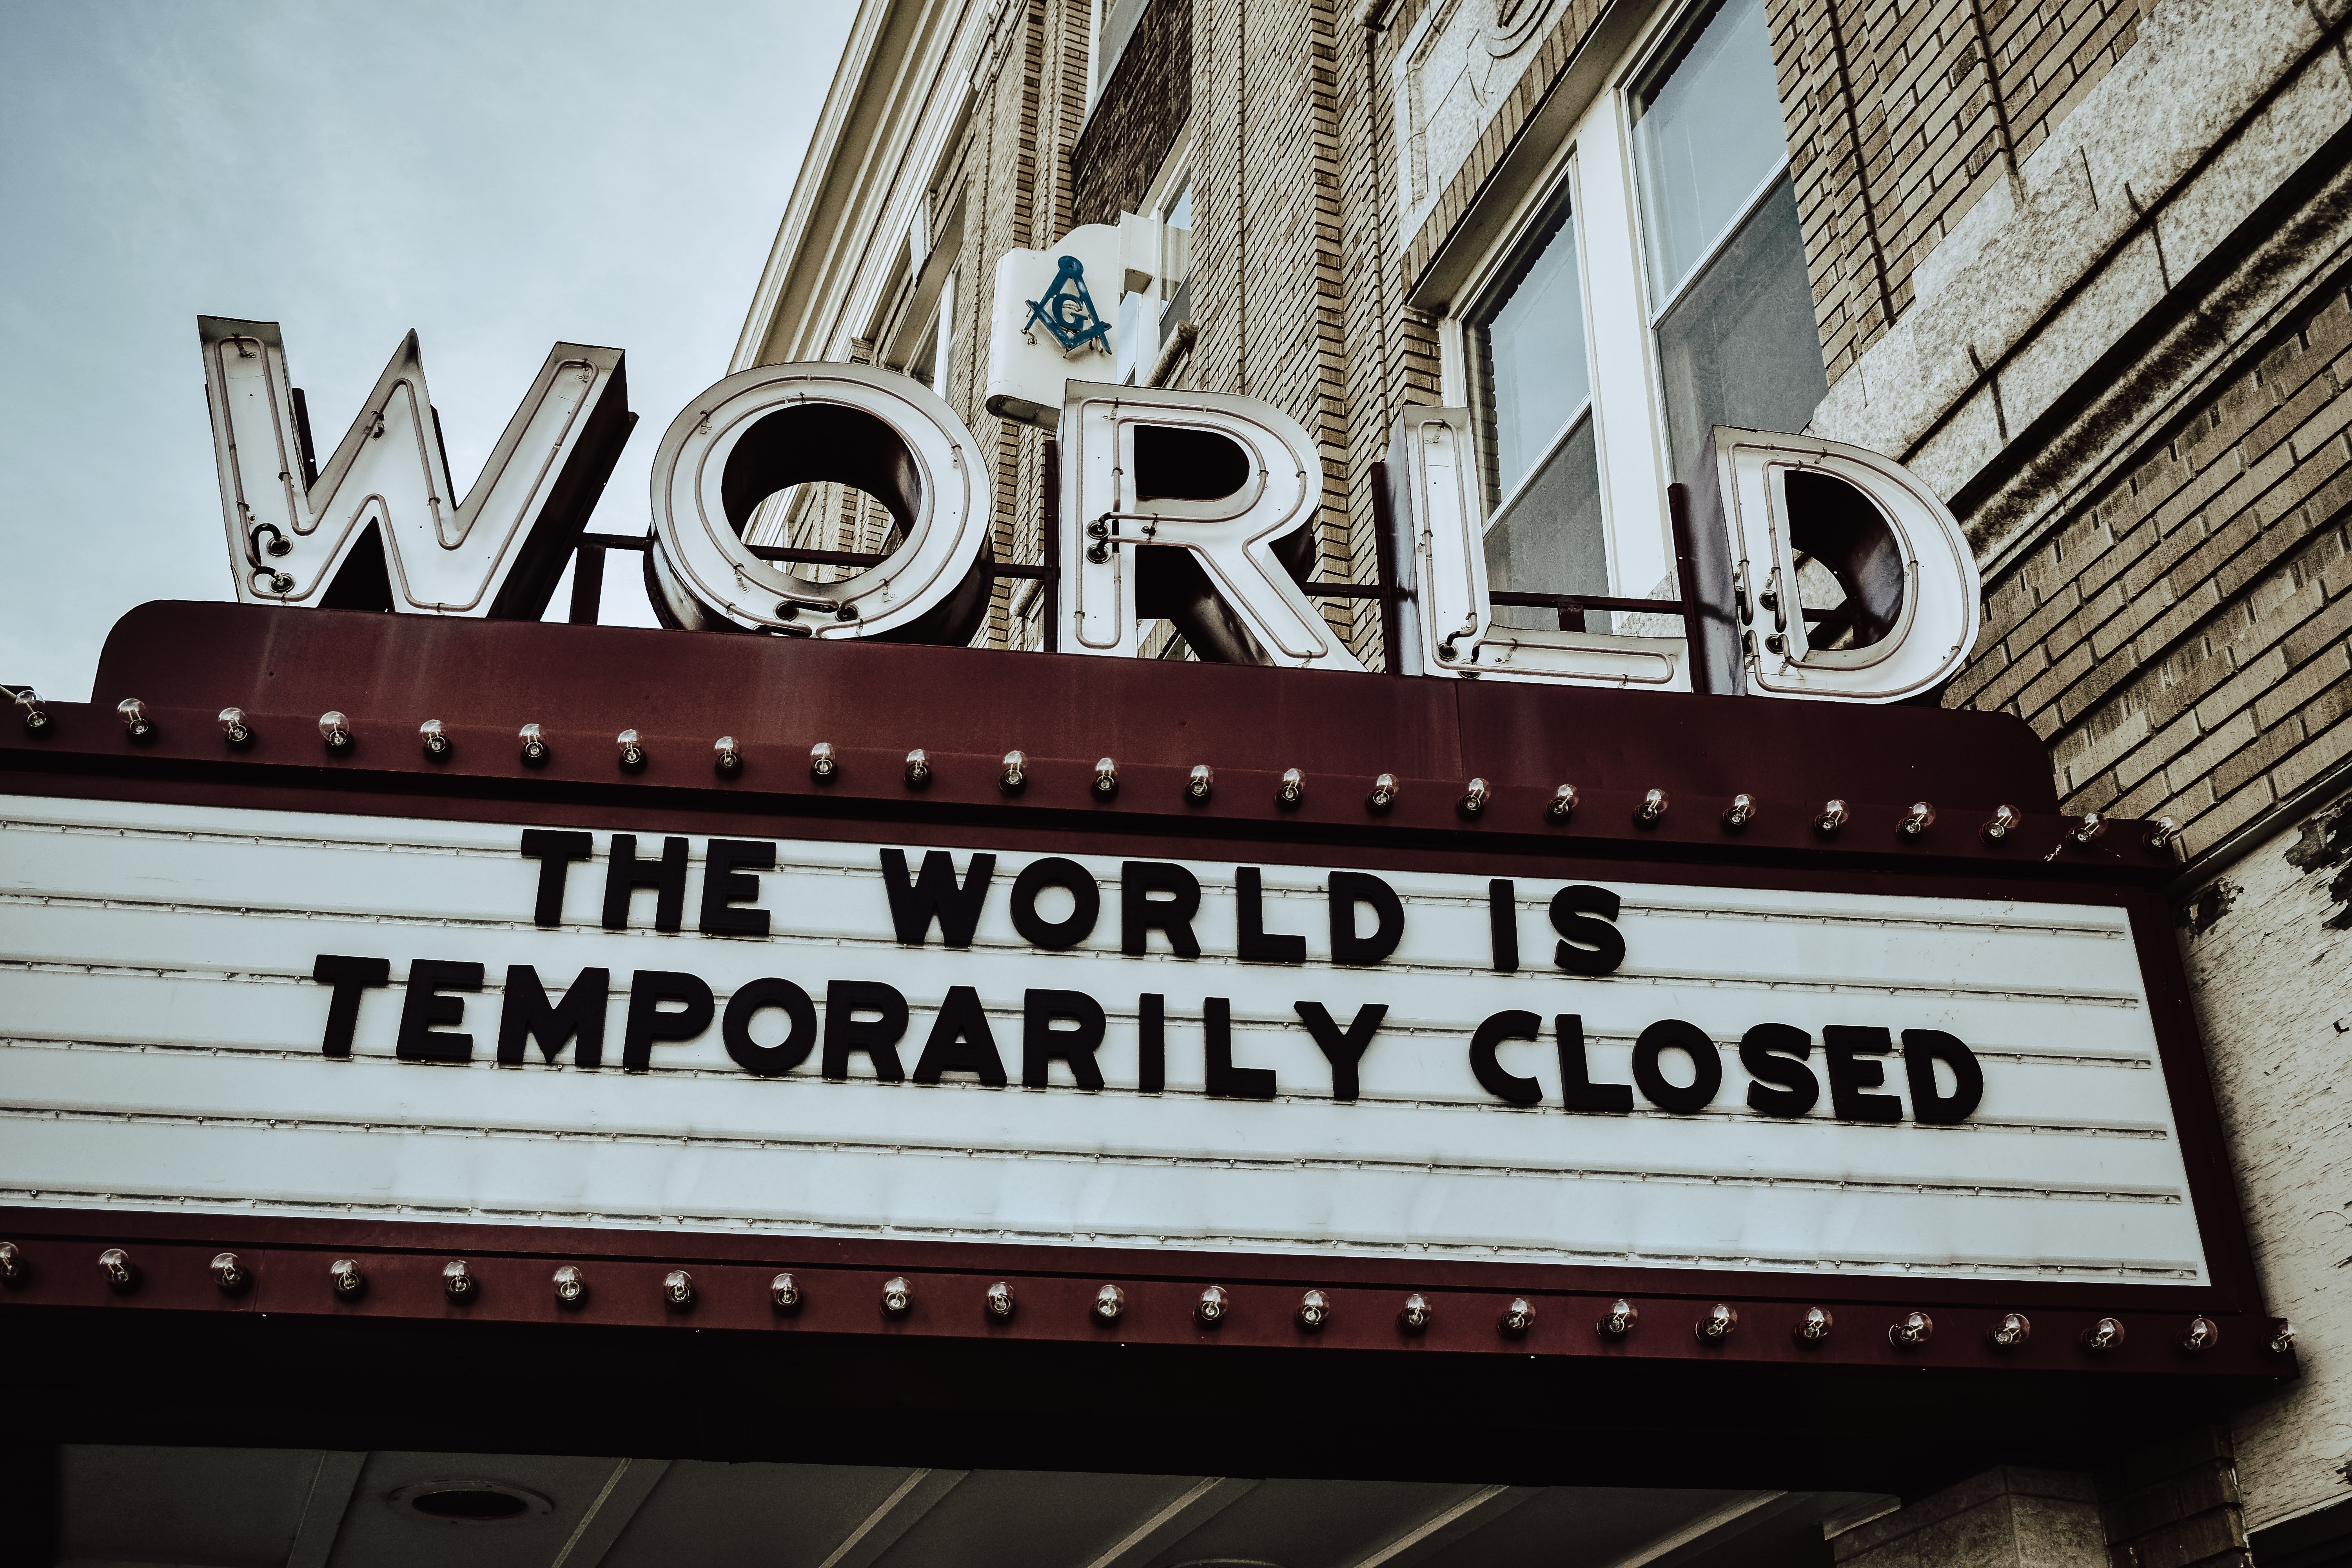  "le monde est temporairement fermé".